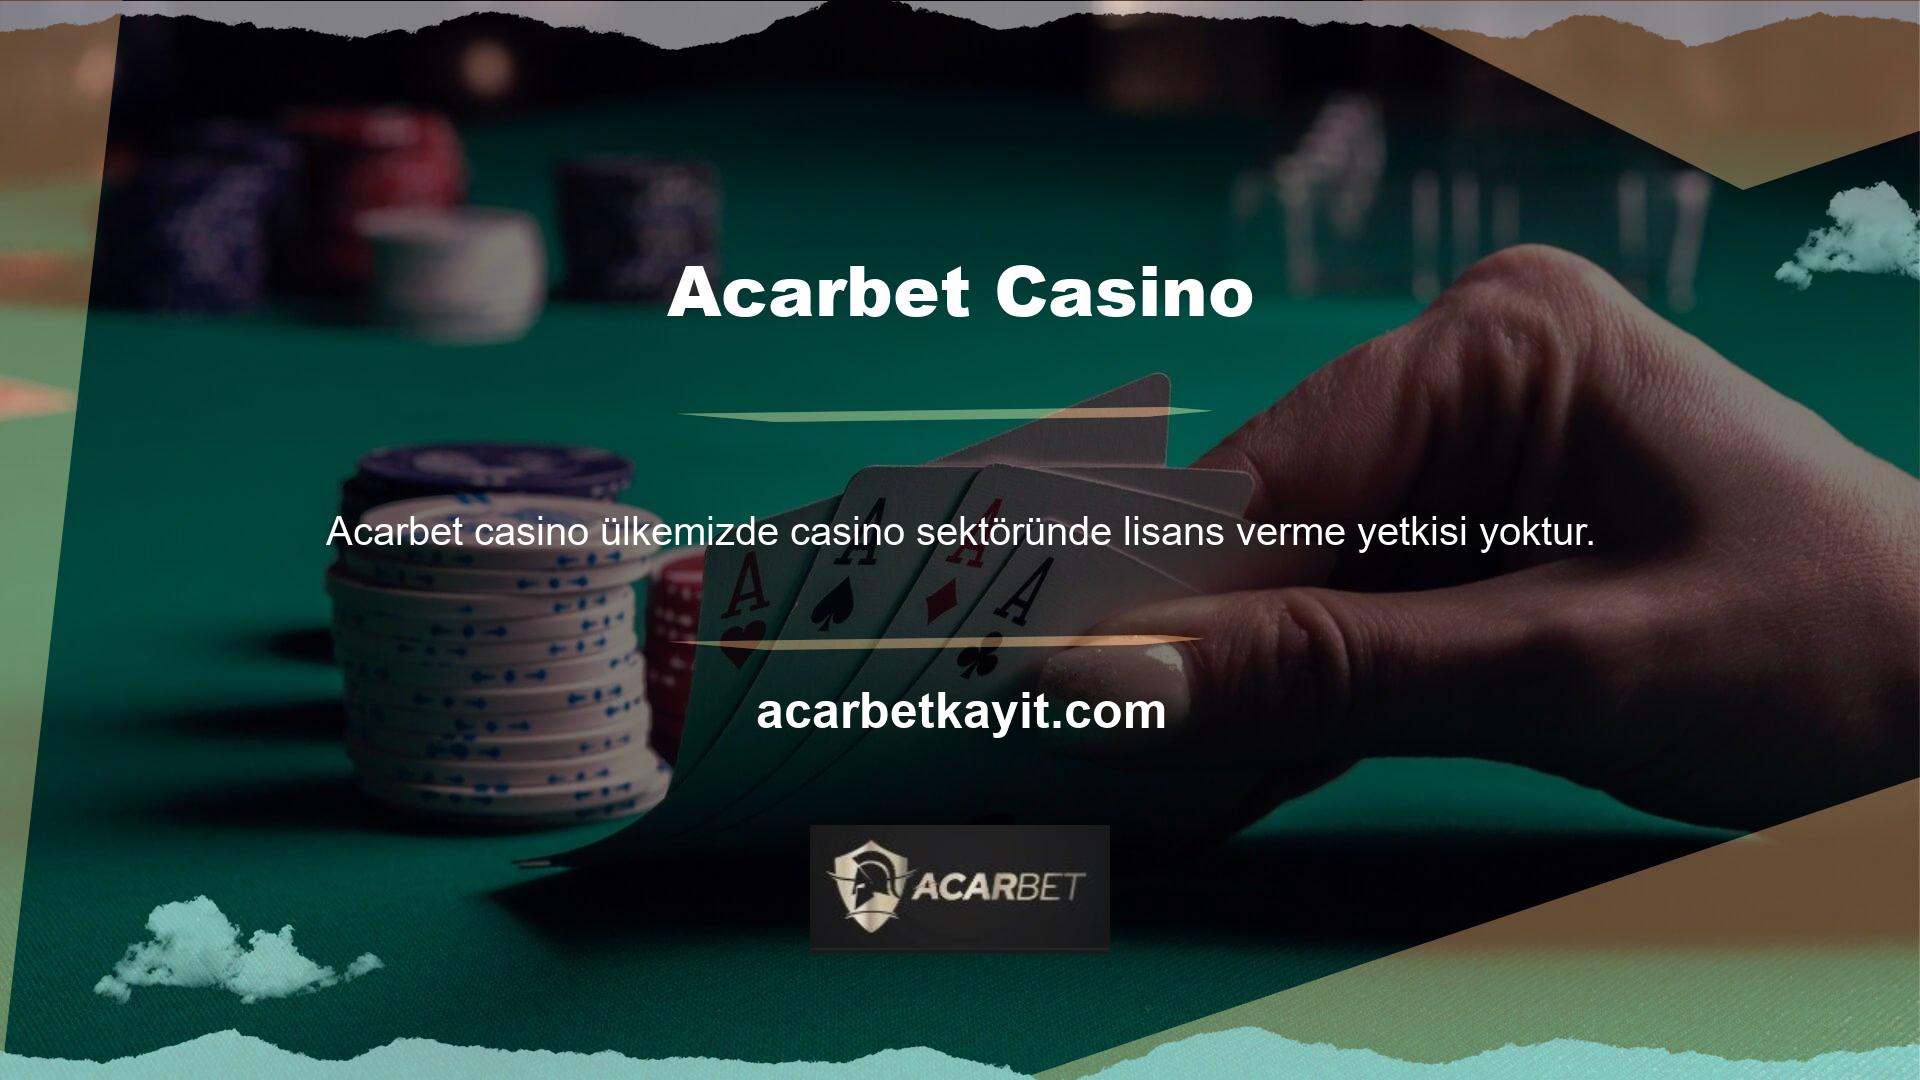 Casino veya casino sektöründe faaliyet göstermek isteyen web siteleri yurt dışından lisans almaktadır